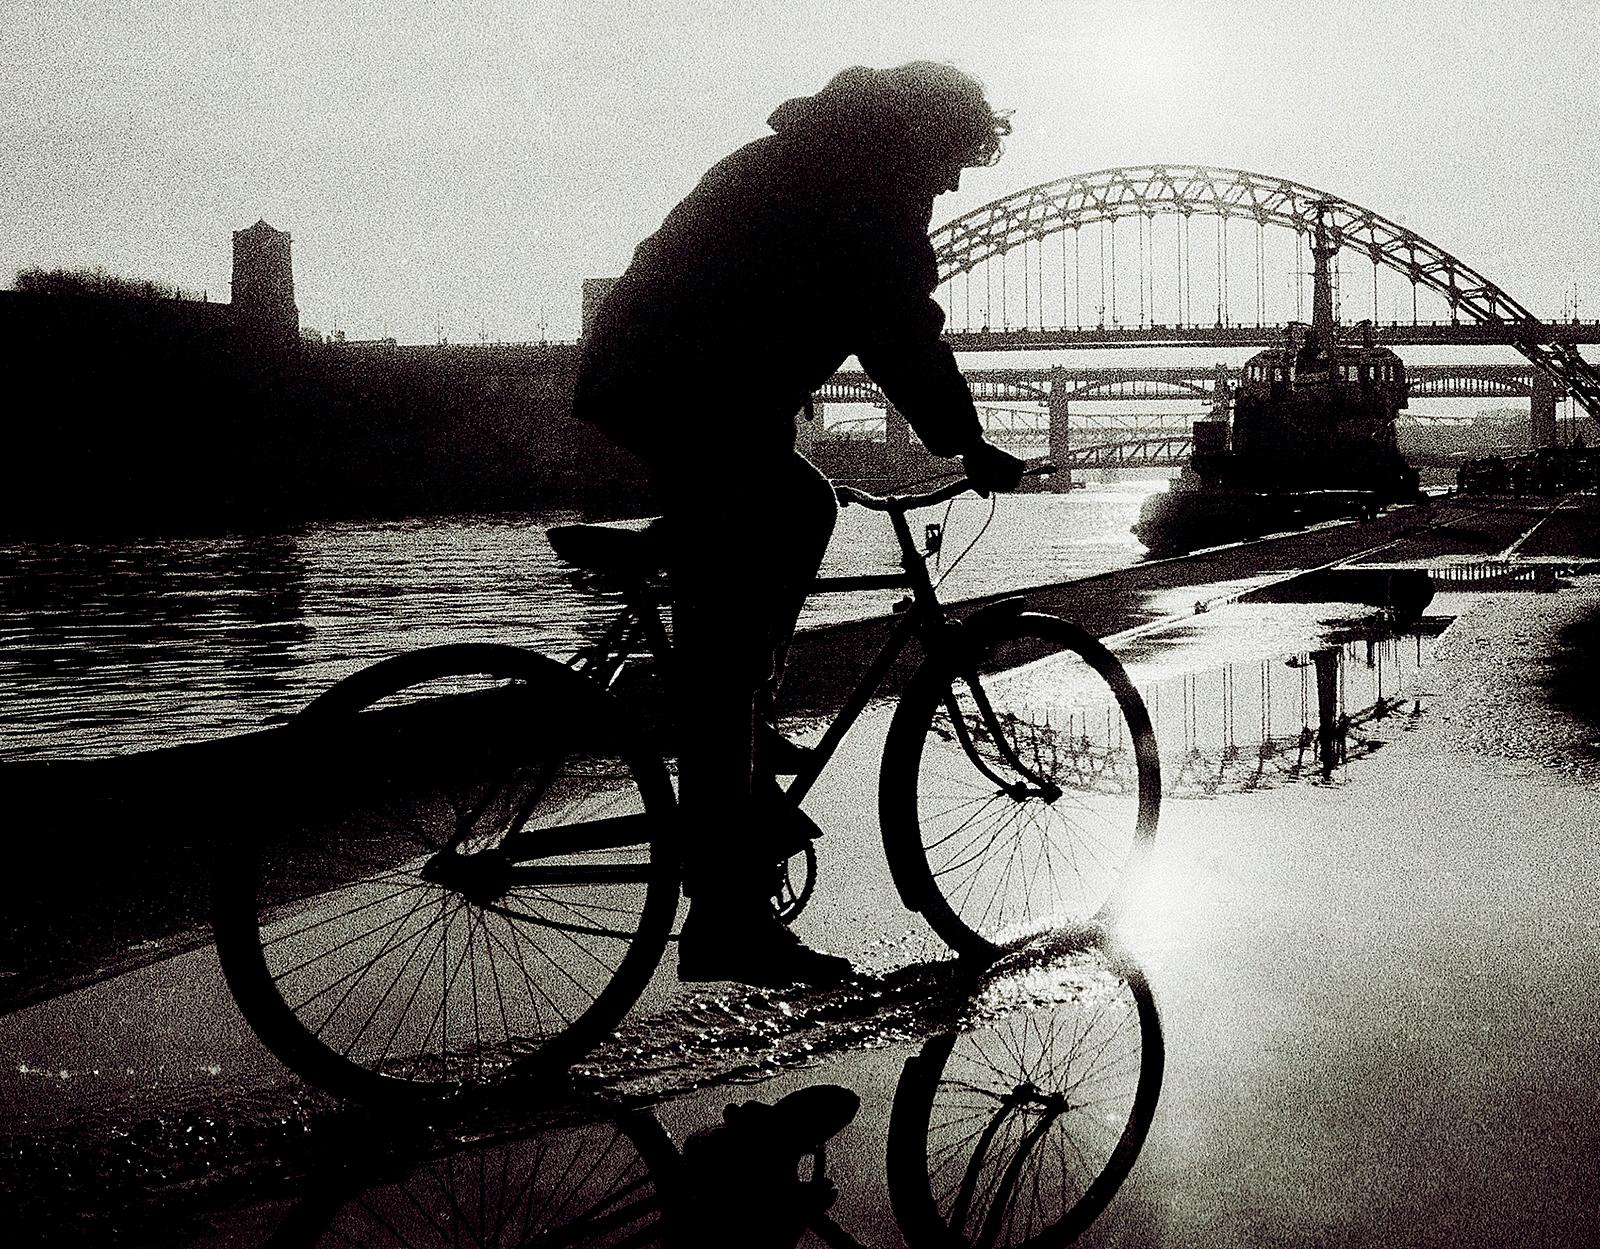 Newcastle – signierter Kunstdruck in limitierter Auflage, Schwarz-Weiß-Foto, City – Photograph von Ian Sanderson